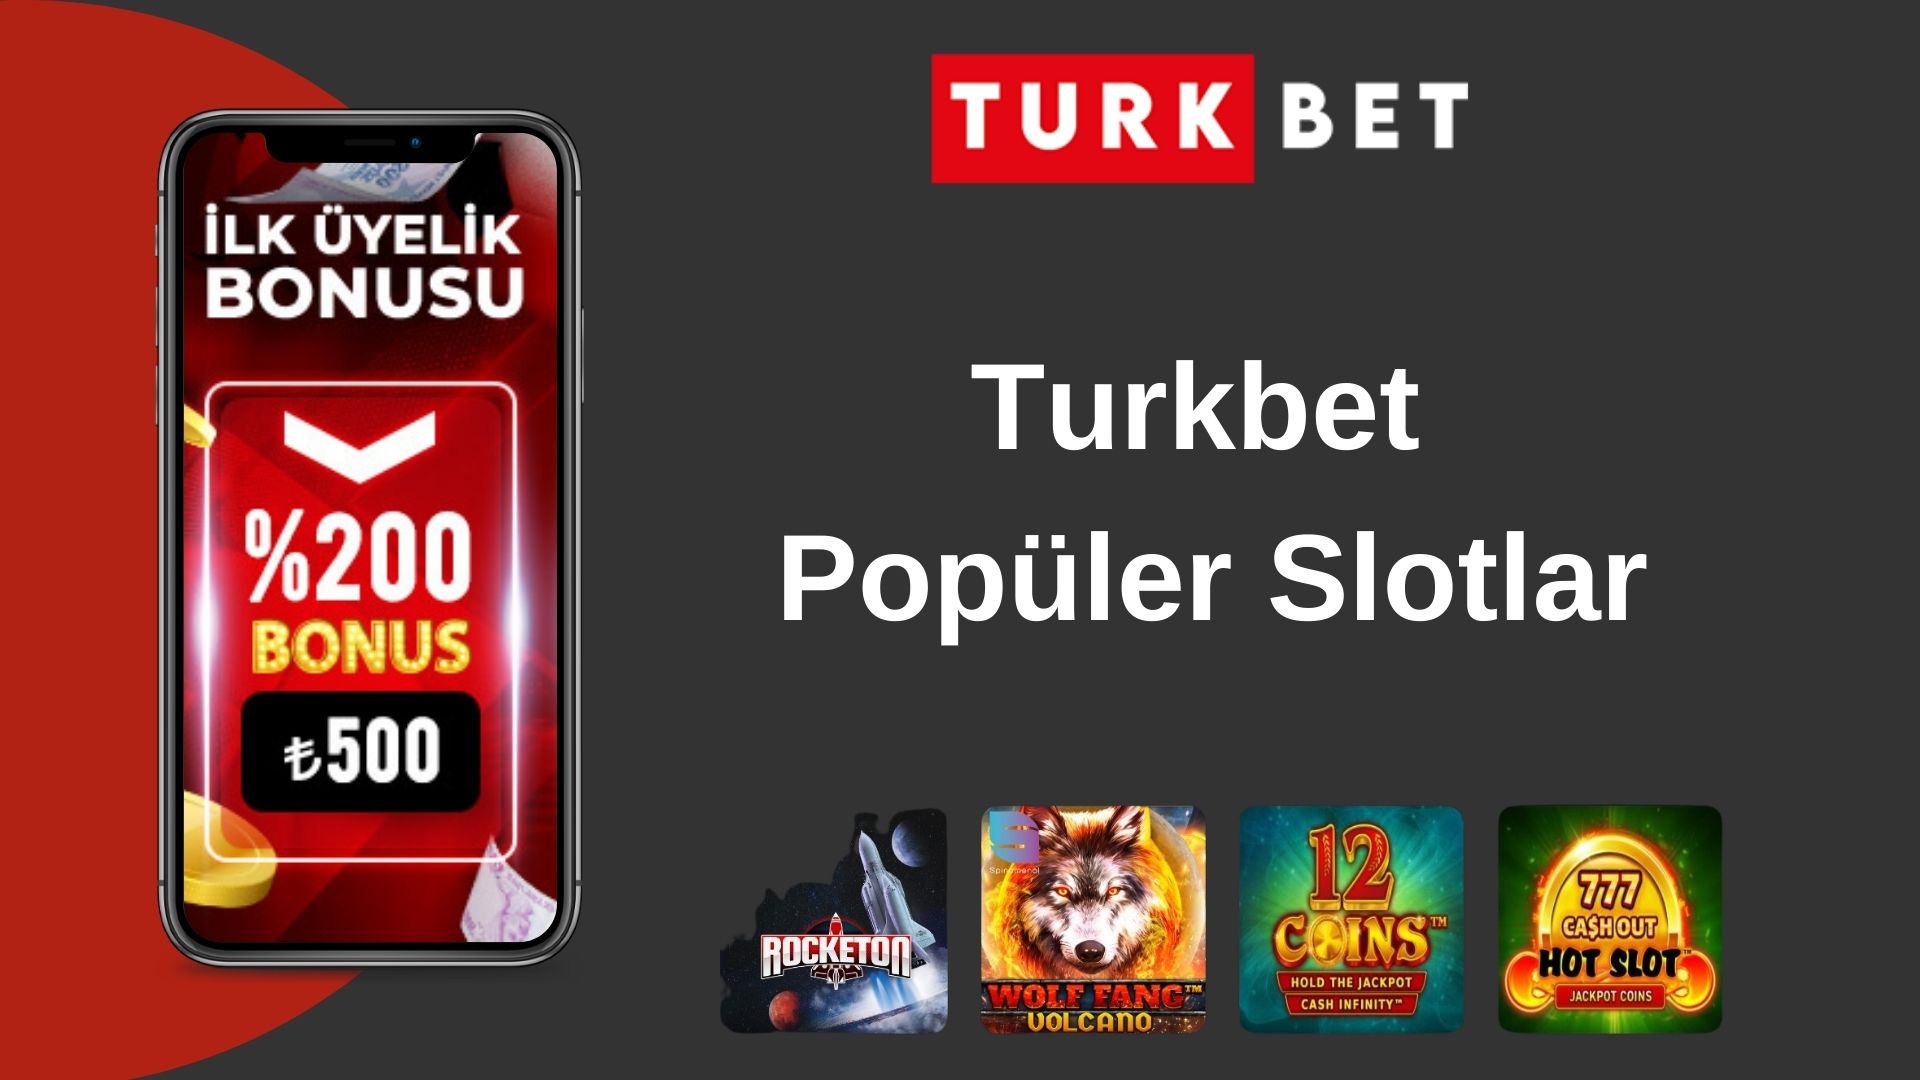 Turkbet Popüler Slotlar